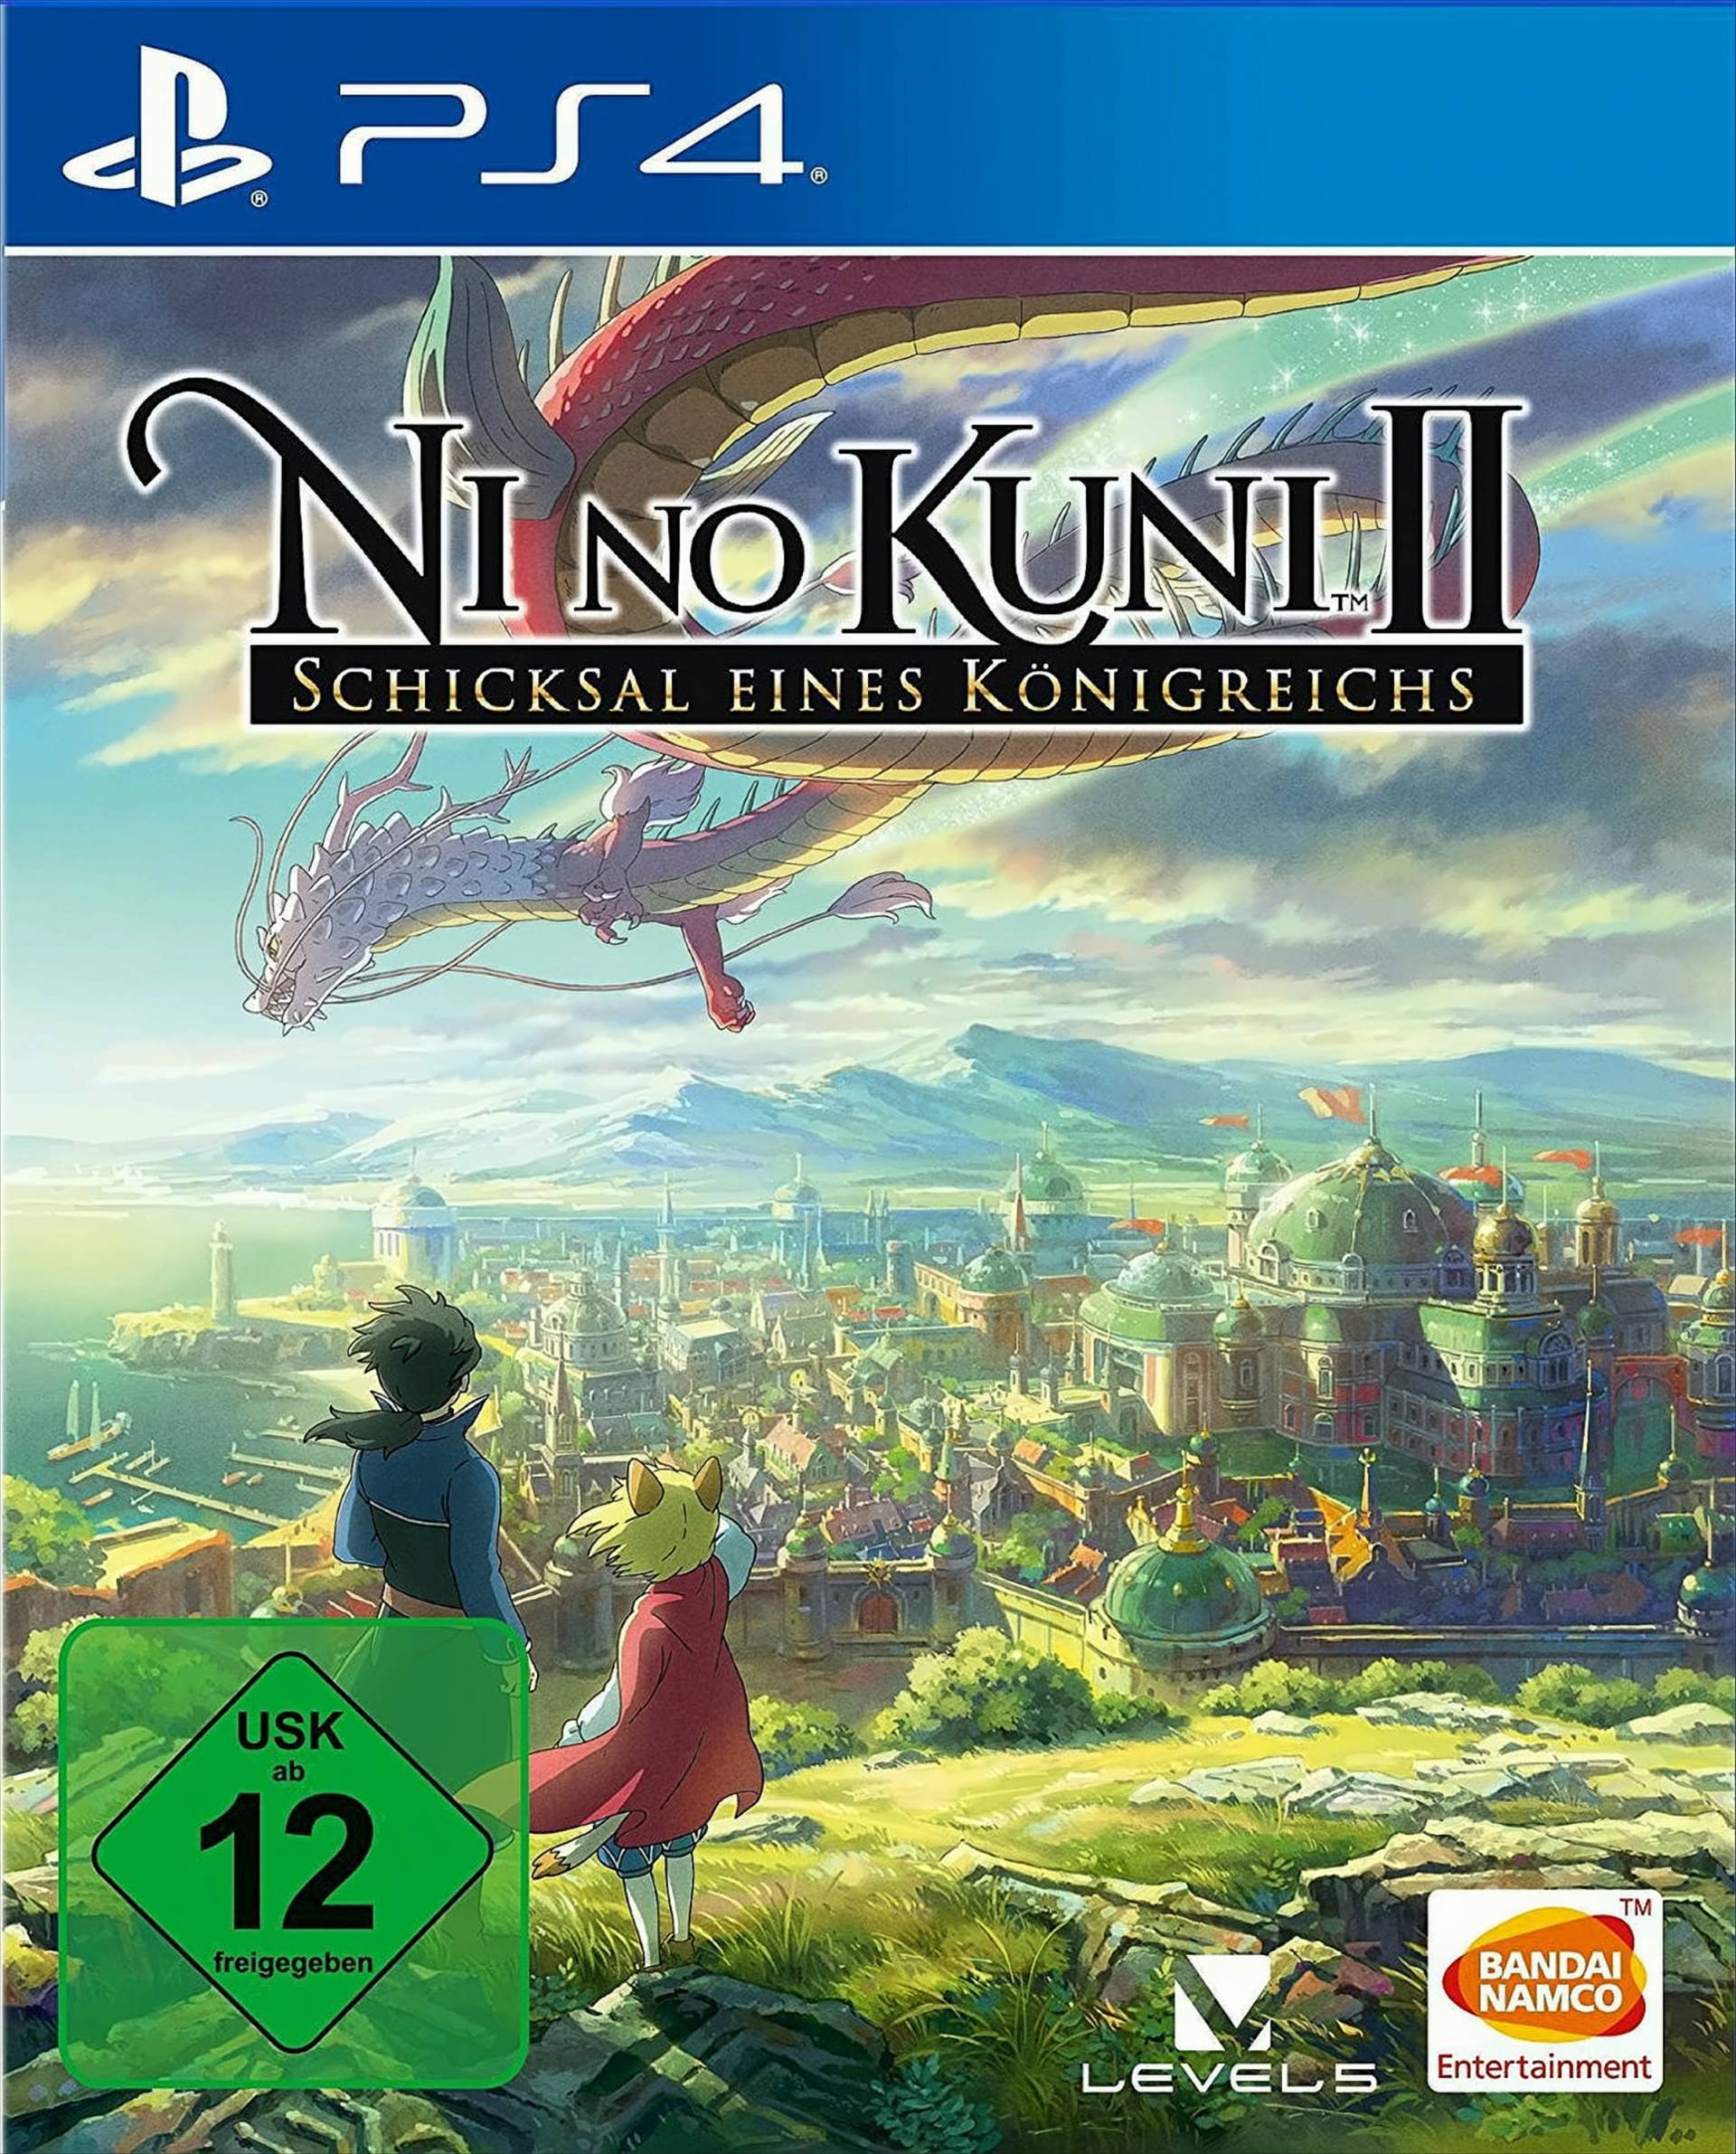 Ni No Kuni II - Schicksal eines Königreichs von Bandai Namco Entertainment